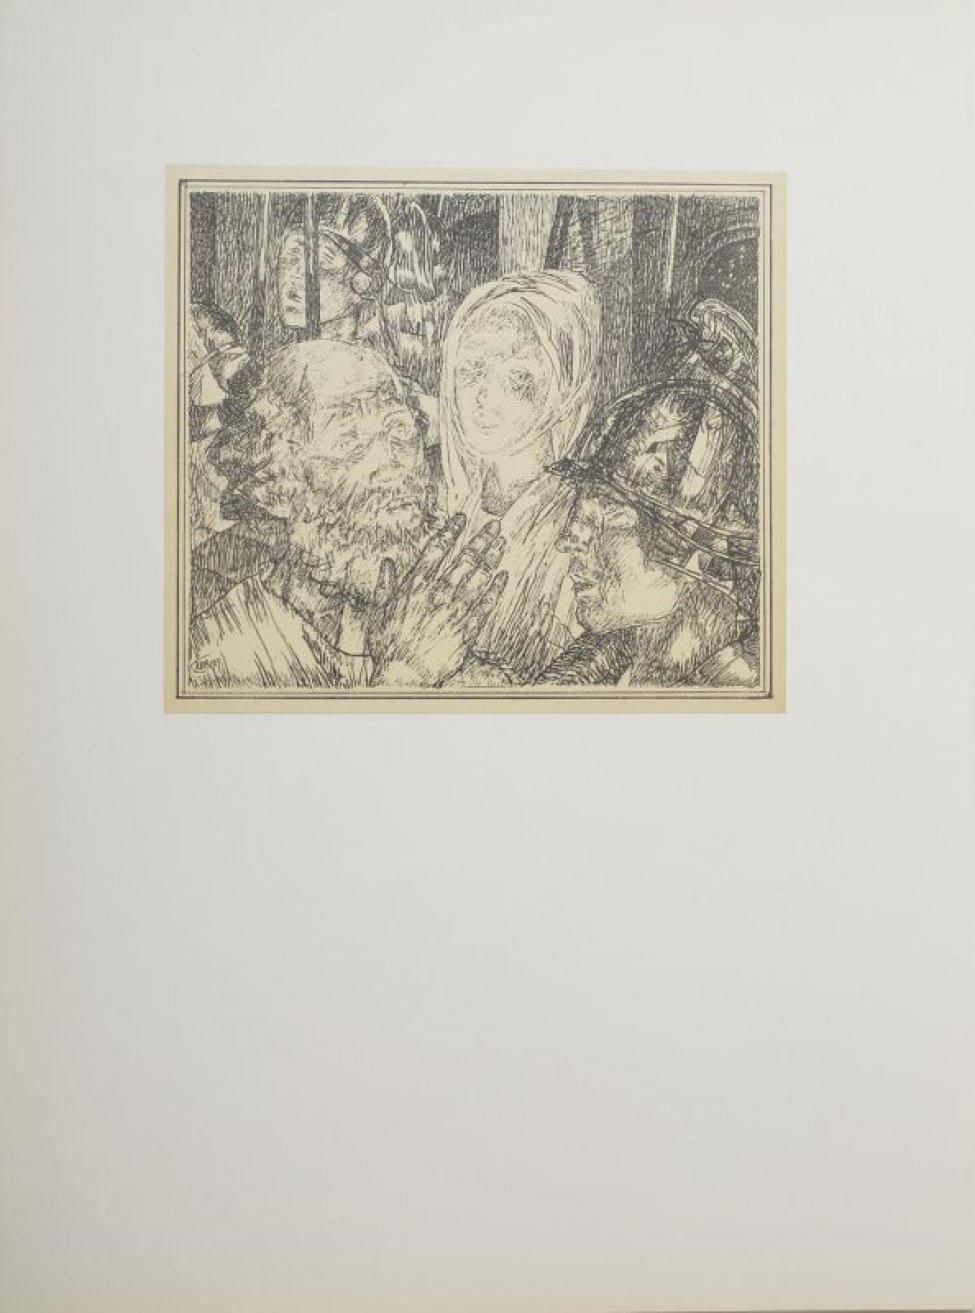 Изображены погрудно слева направо пожилой мужчина с поднятой правой рукой, молодая женщина в накидке на голове и молодой мужчина в шлеме. За ними видны лица людей.
Обрамление: Рисунок обведен двойной рамкой.